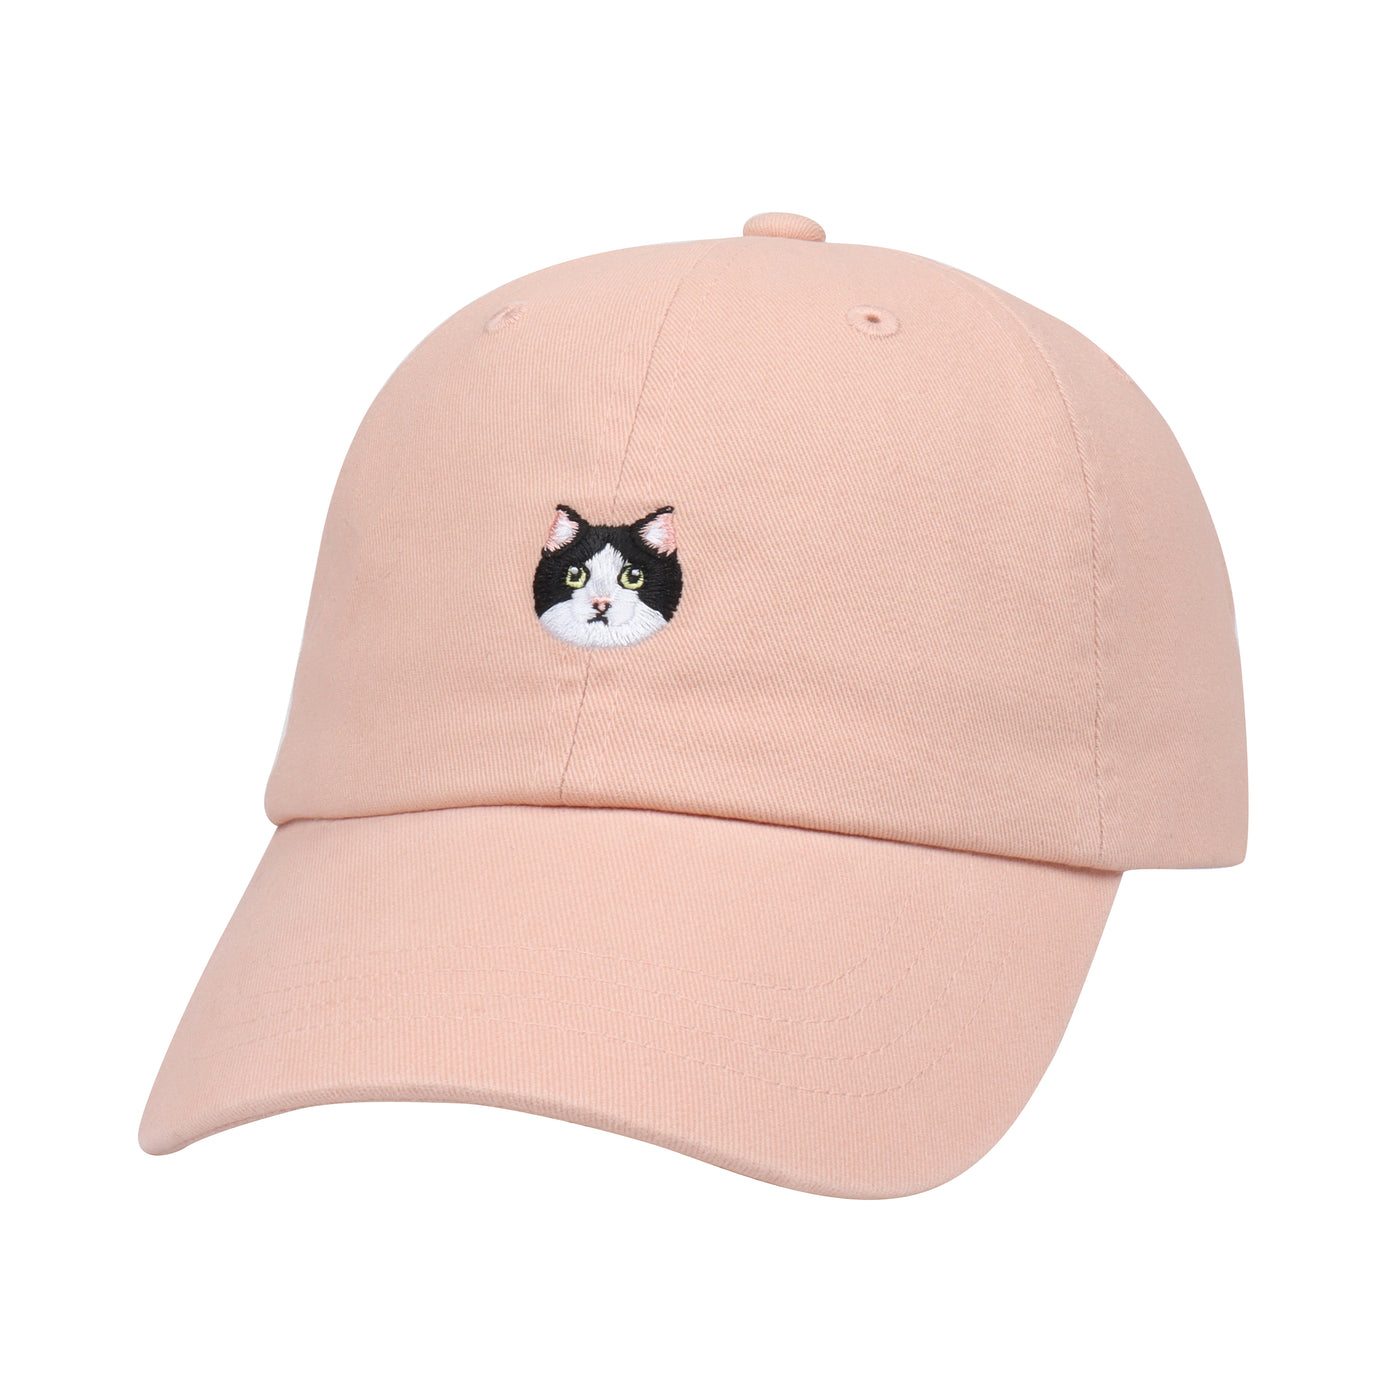 Hatphile Tuxedo Cat Soft Baseball Cap